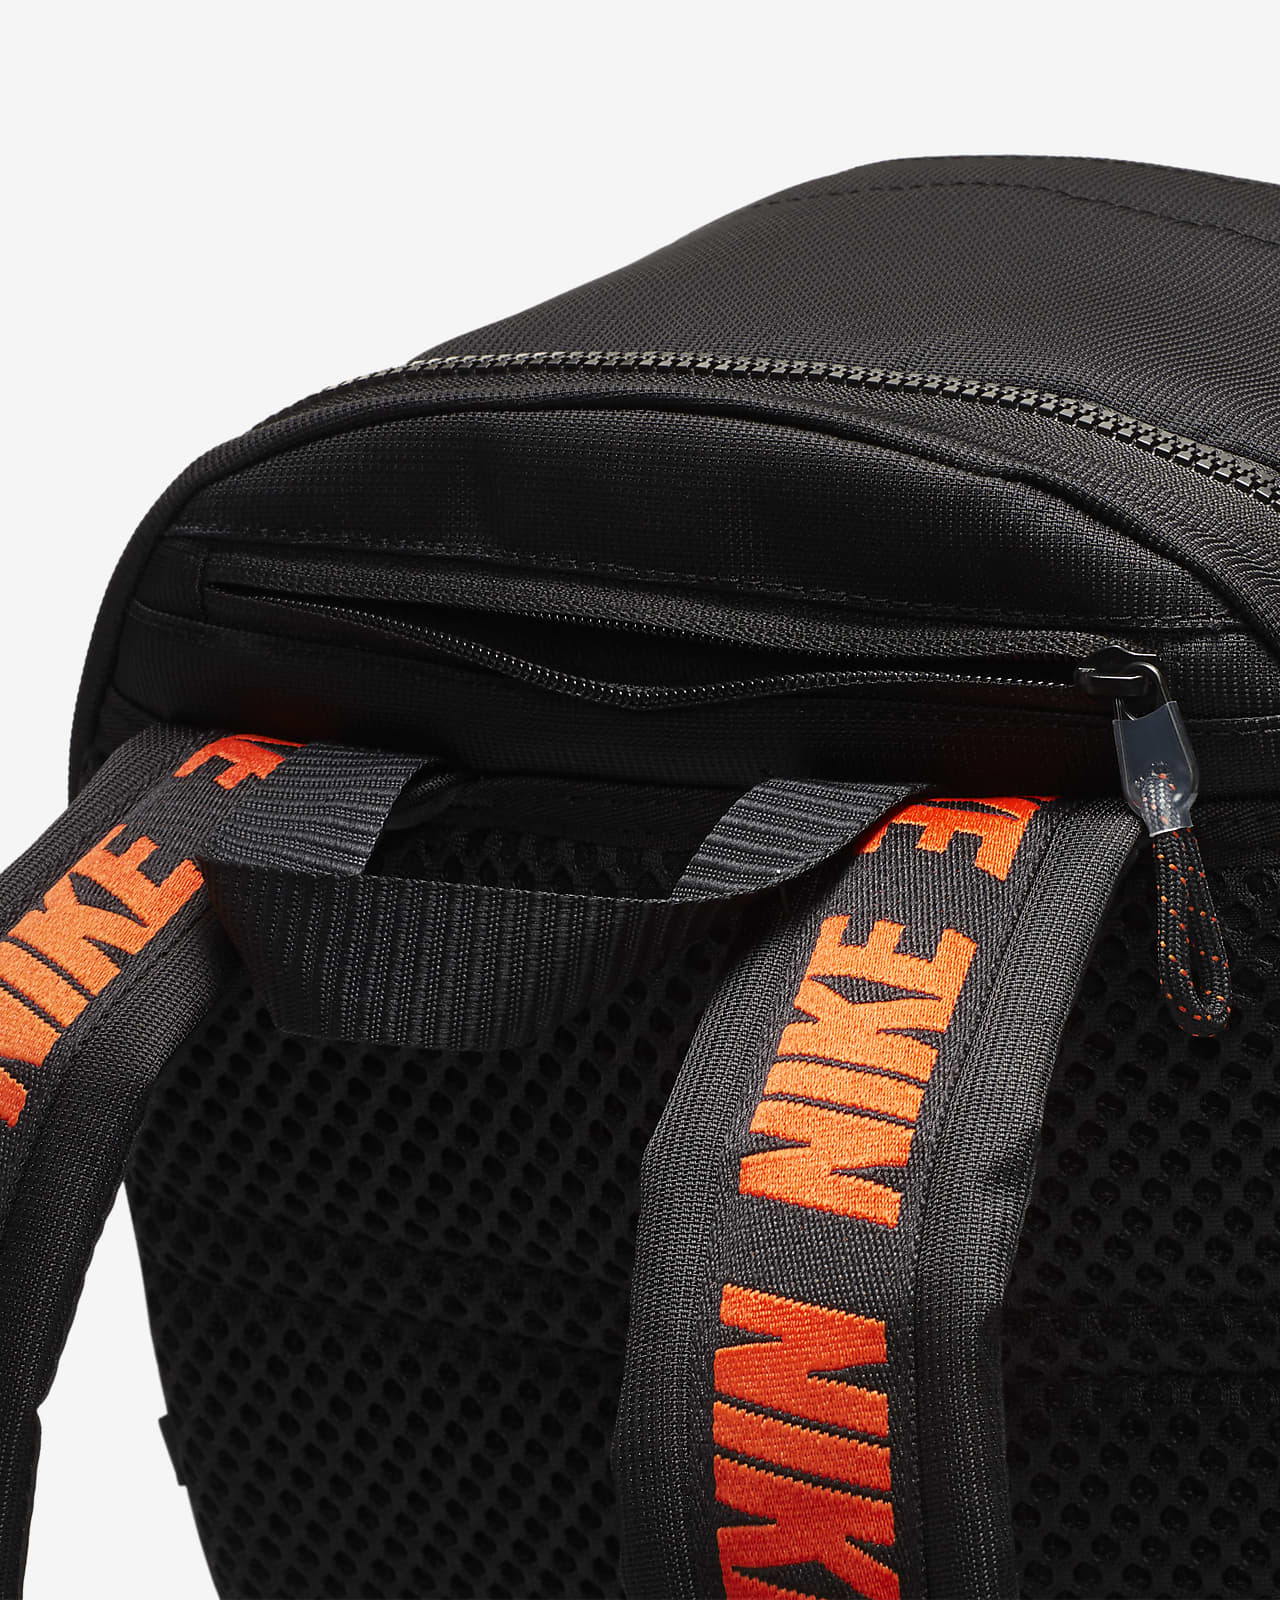 Nike Sportswear Essentials Backpack. Nike.com